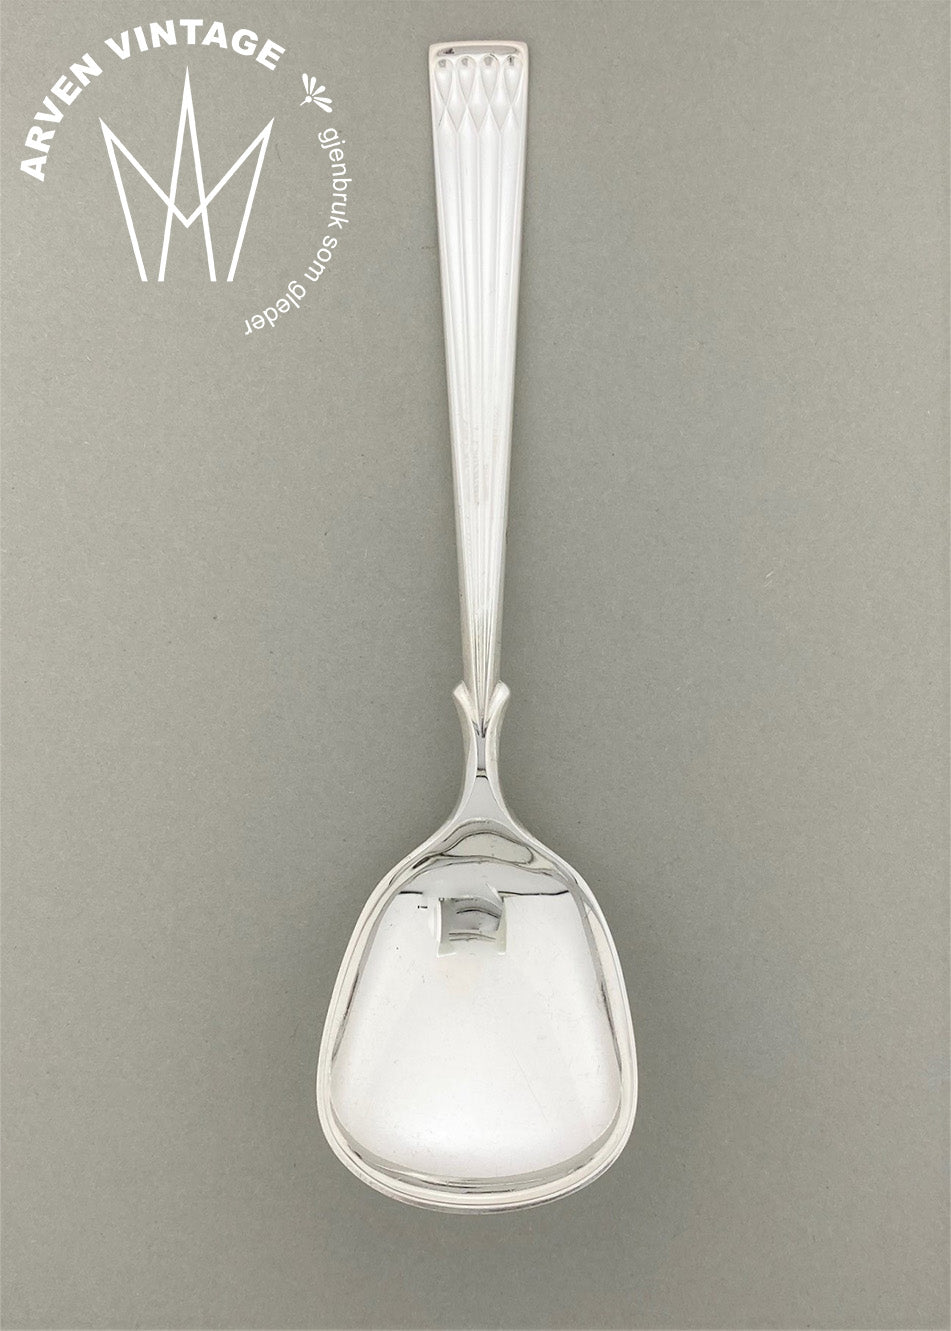 Vintage Heirloom silver large jam spoon